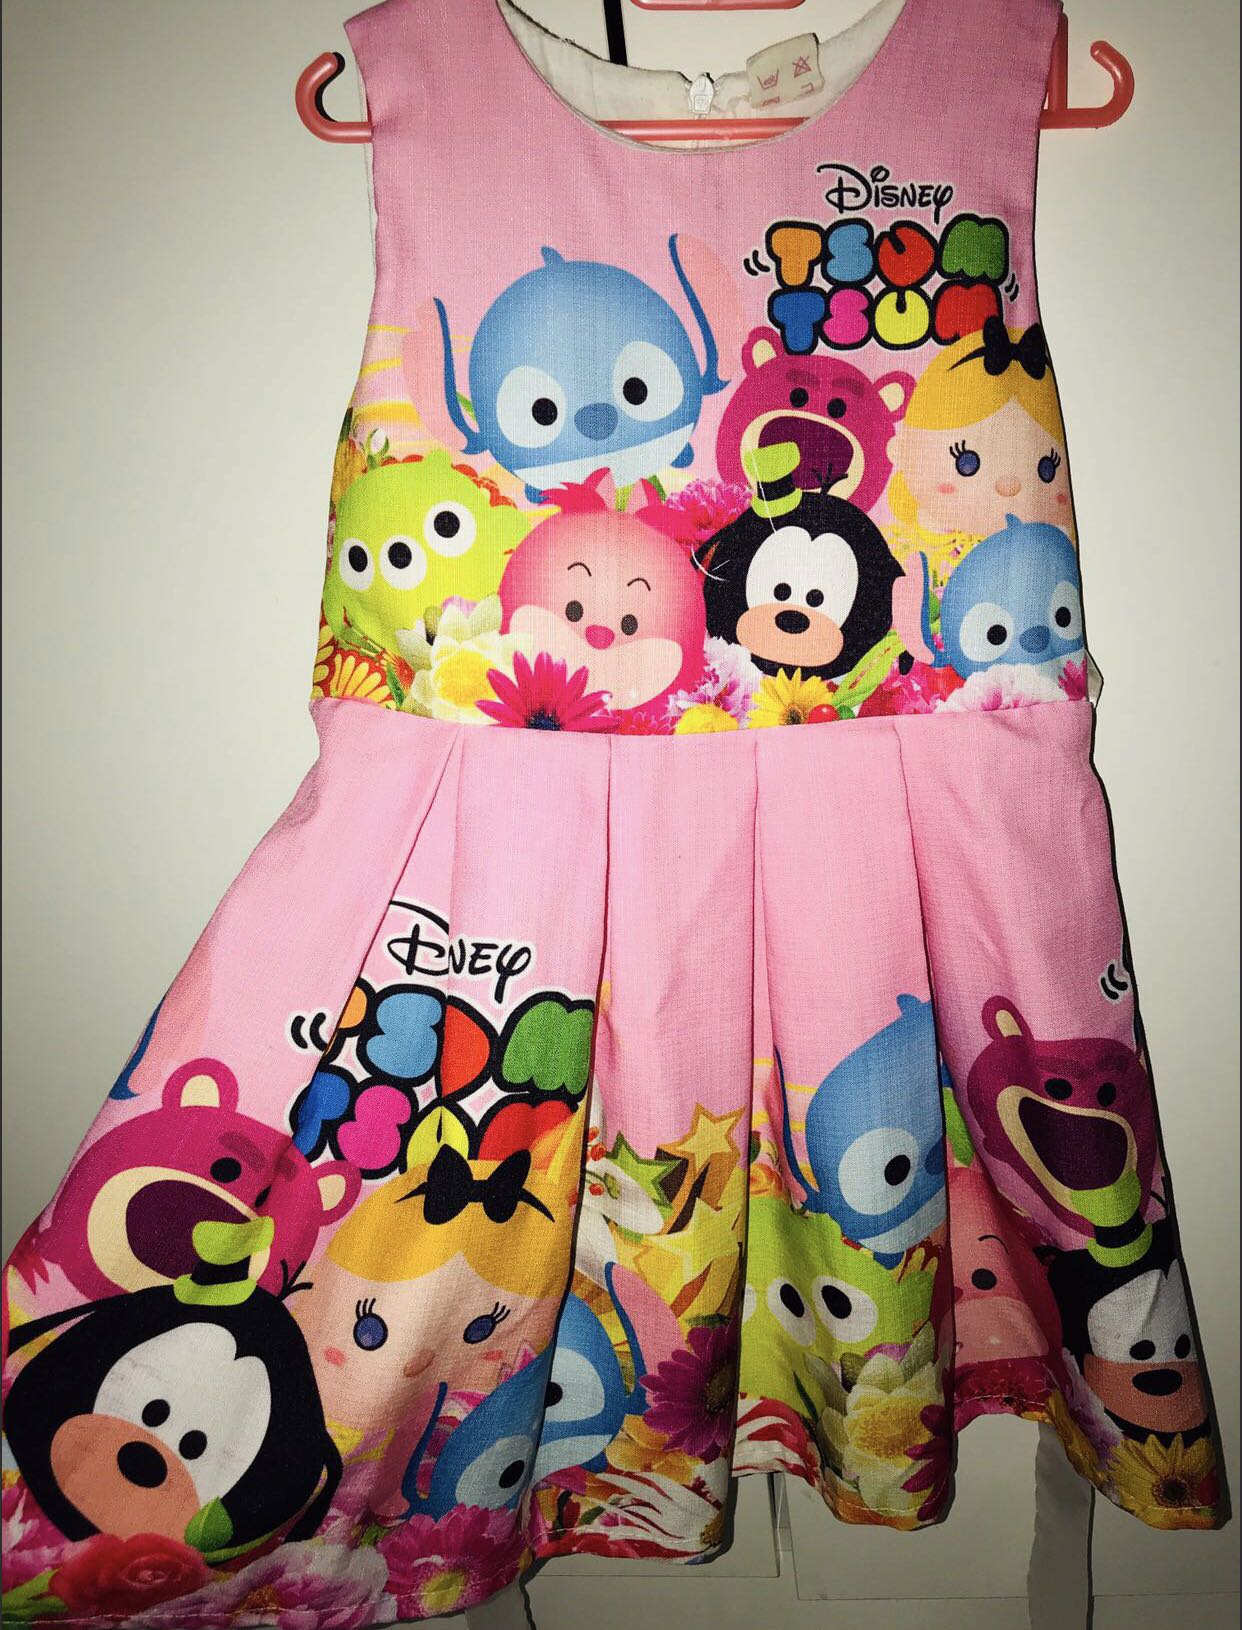 Tsum Tsum pink dress, Babies & Kids, Girls' Apparel, 4 to 7 Years on ...